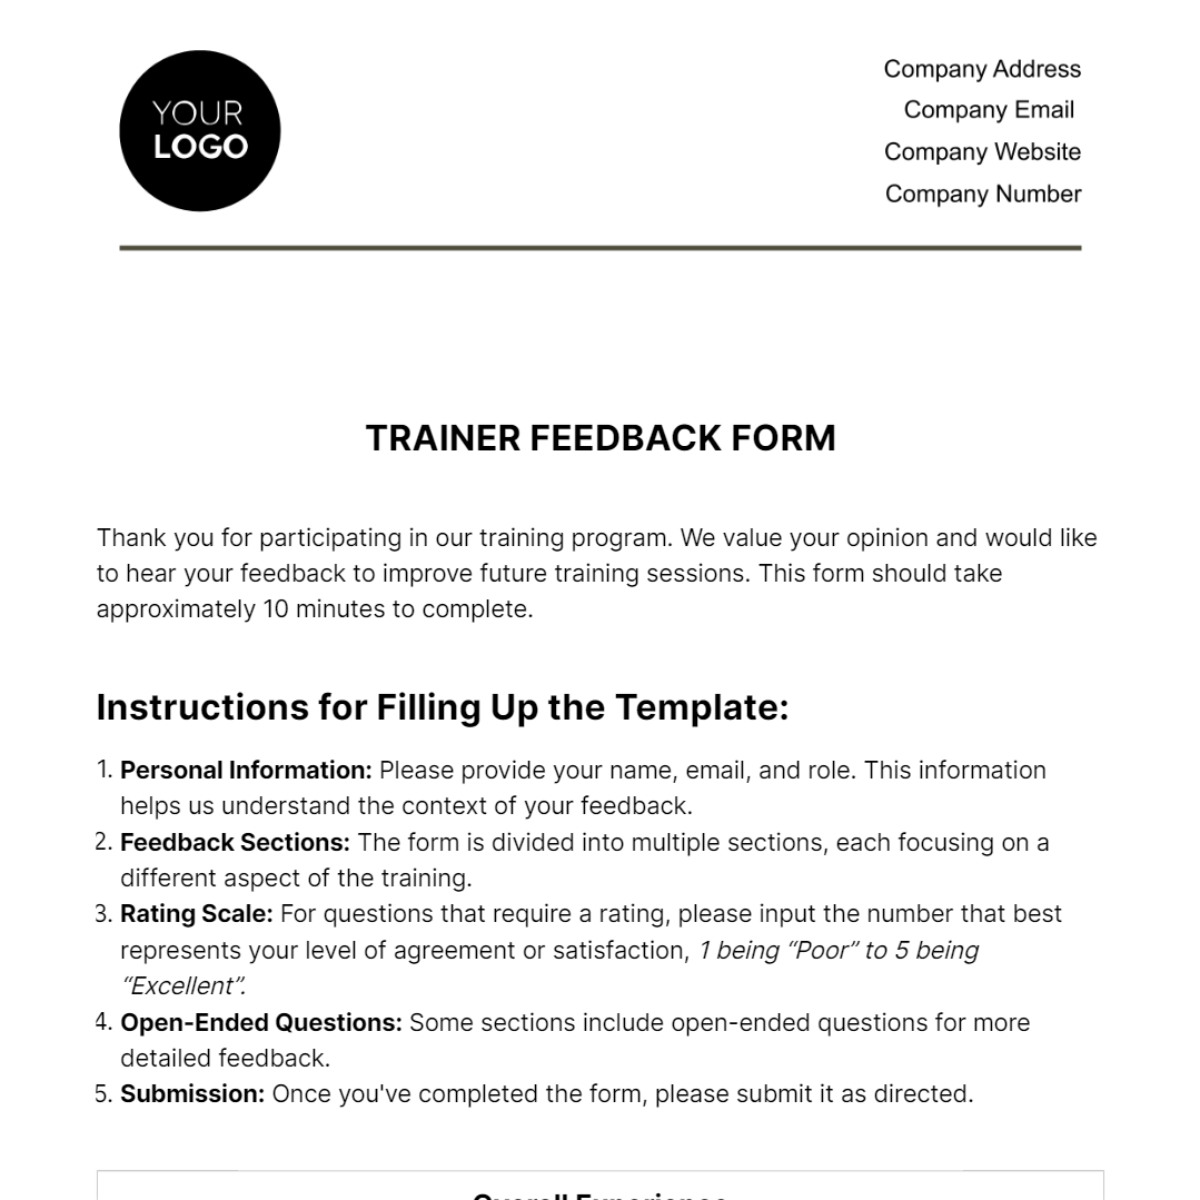 Training Feedback Form HR Template